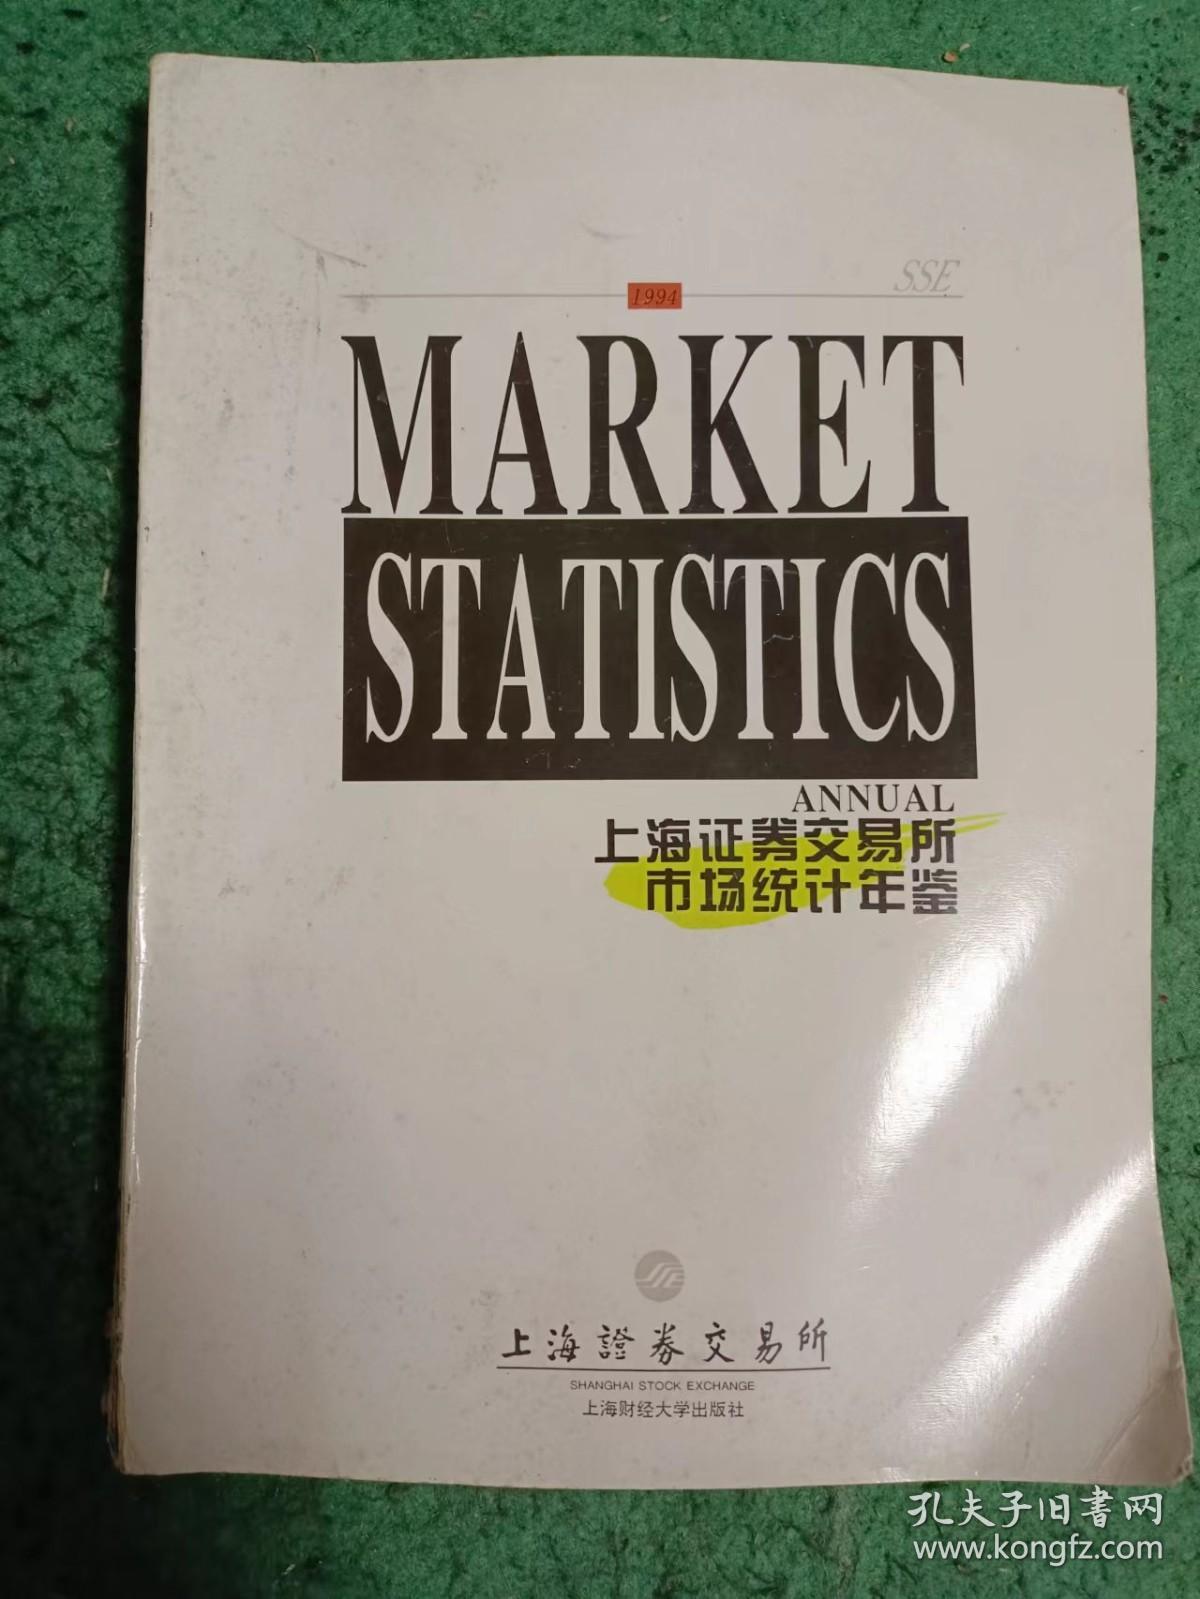 上海证券交易所市场统计年鉴 1994